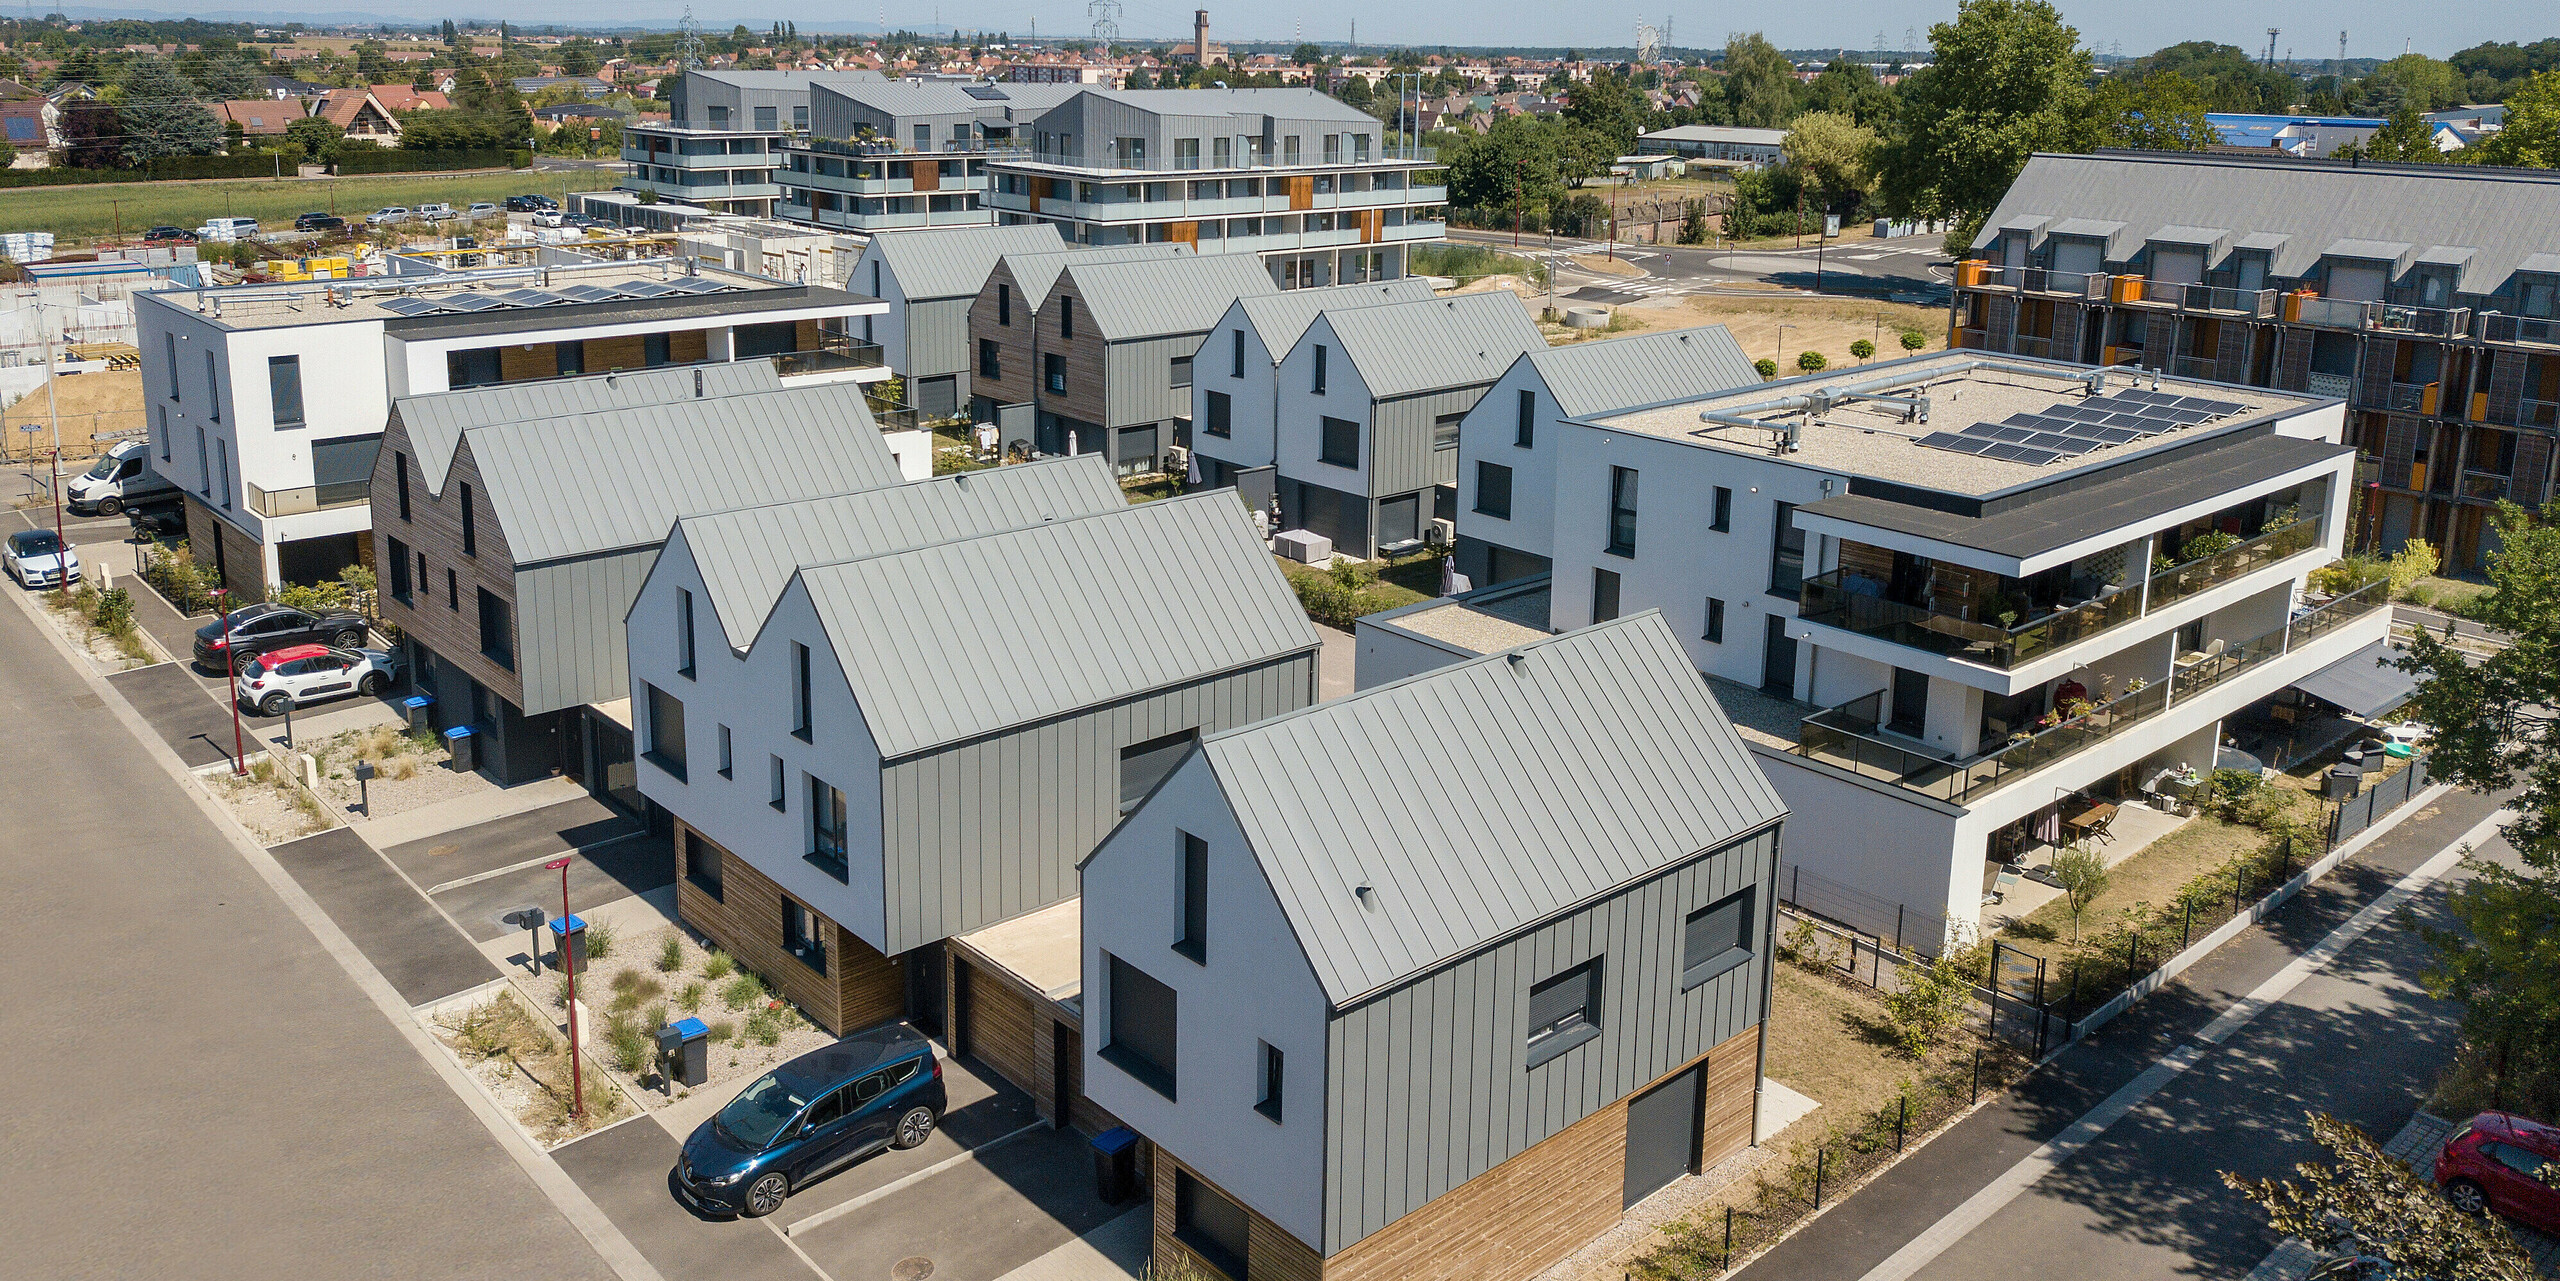 PREFALZ in Hellgrau zieht sich über die Fassaden und Satteldächer einer Reihenhaus-Siedlung in Mundolsheim. Die einheitlichen Gebäudehüllen aus Aluminium schaffen ein harmonisches Gesamtbild.